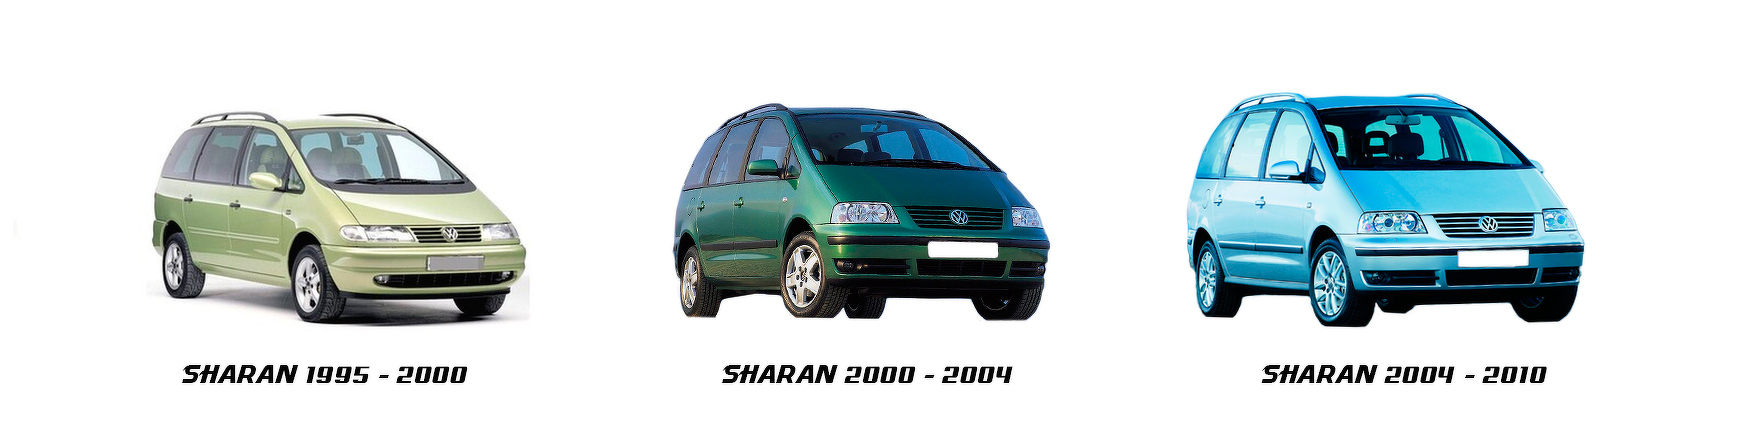 volkswagen vw sharan 2001 2003 2003 2004 recambios repuestos nuevos